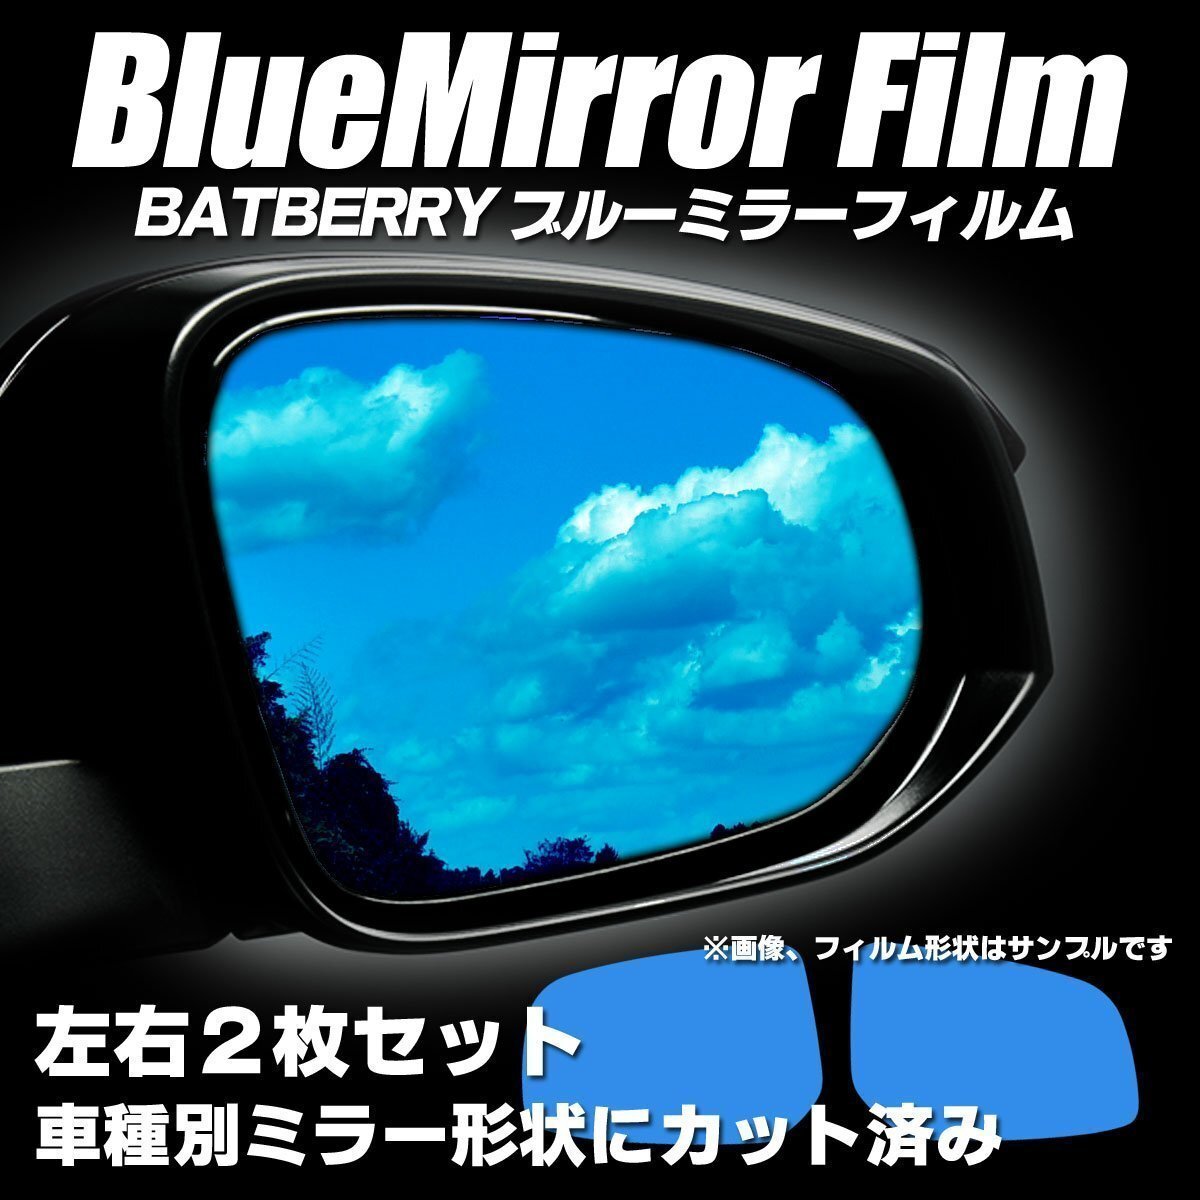 BATBERRY голубой зеркальная пленка Daihatsu Mira e:S LA300S/LA310S для левый и правый в комплекте эпоха Heisei 23 год 9 месяц ~ эпоха Heisei 29 год 5 месяц 